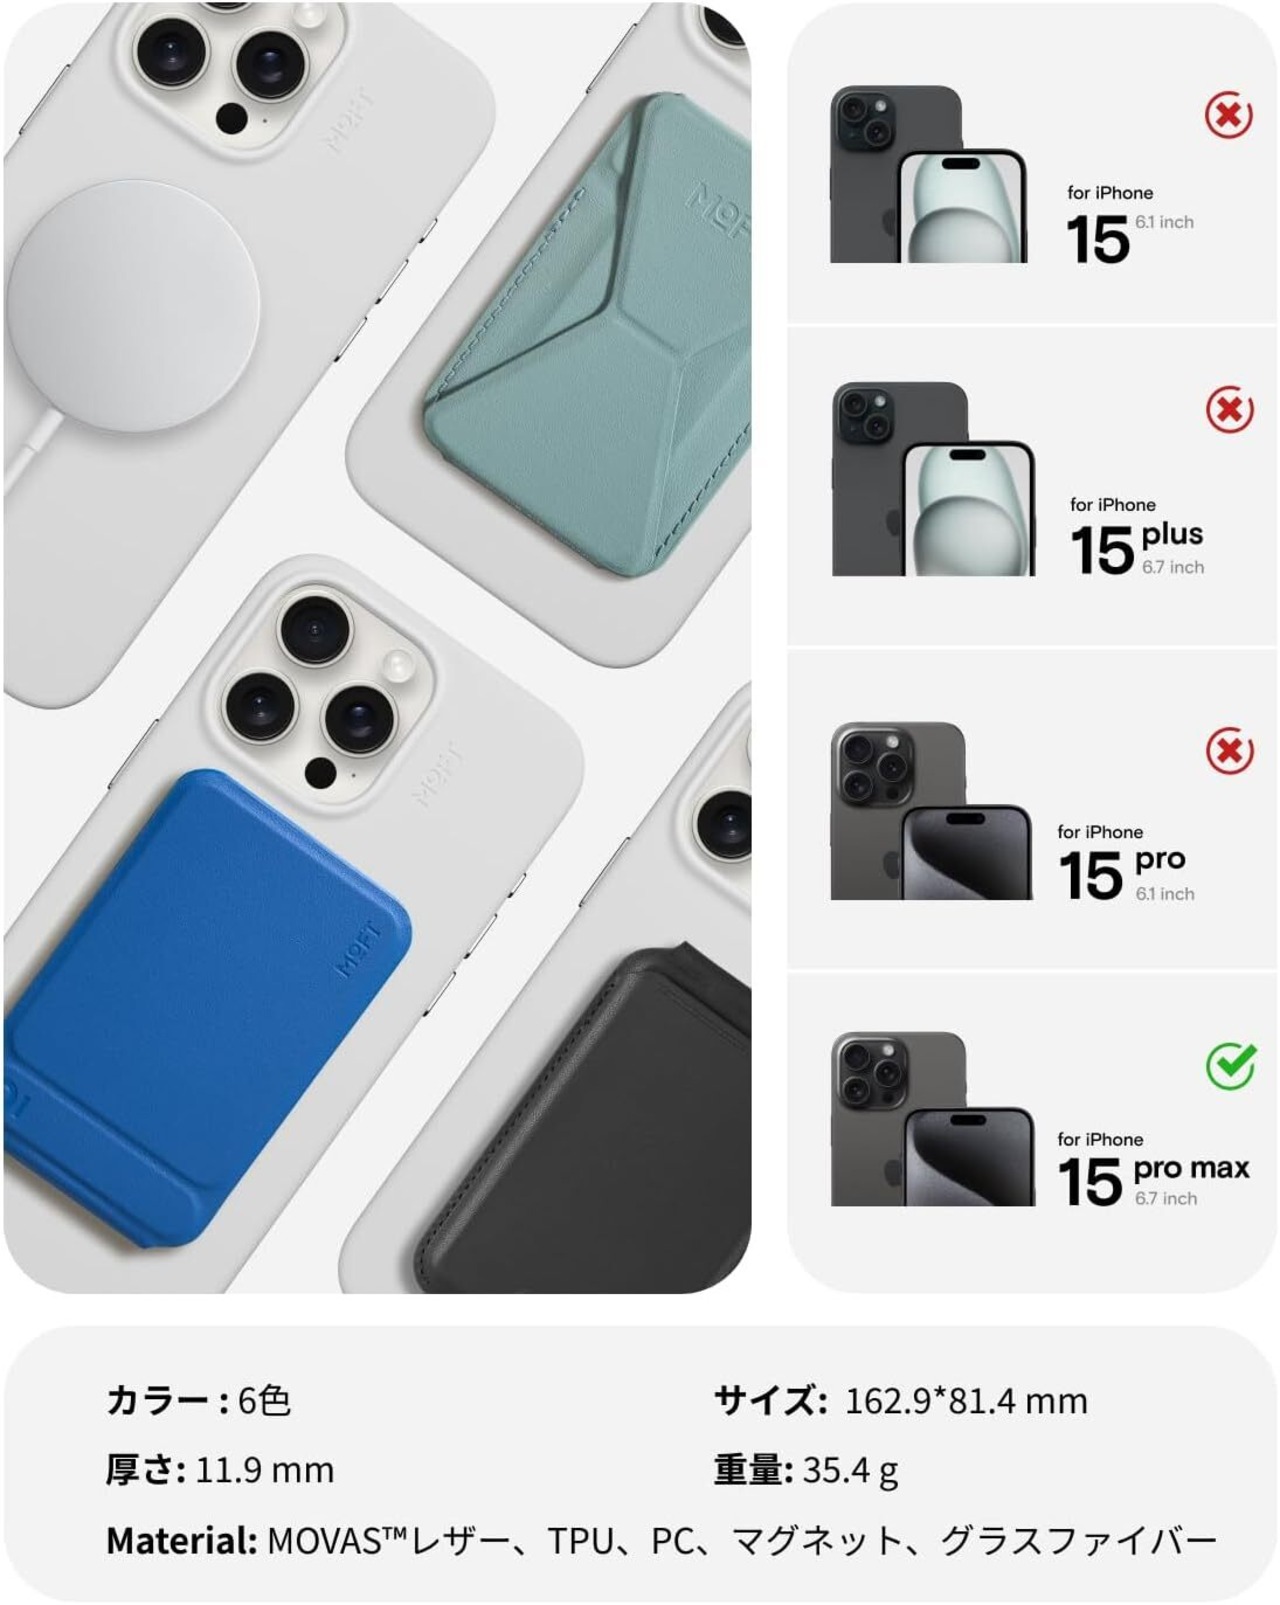 MOFT iPhone 15 Pro Max 対応 MOVAS™ レザーケース MagSafe対応 高耐久 汚れに強い 磁力強化 軽量 ワイヤレス充電対応 1.5m落下防止 高反発ボタン 全面保護 保護ケース